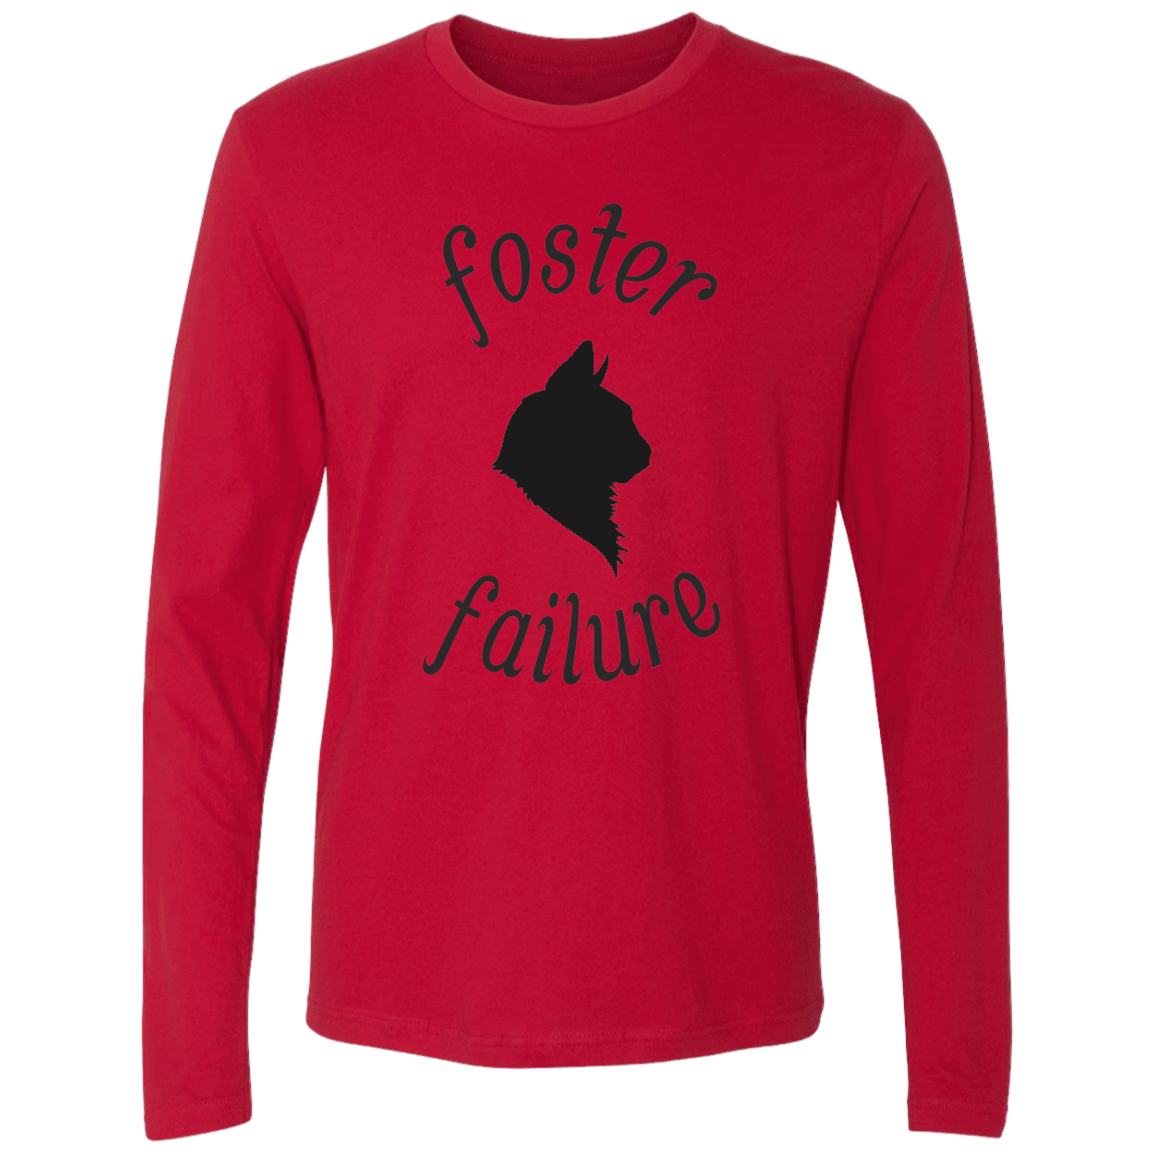 Foster Failure Cat - Long Sleeve T Shirt.